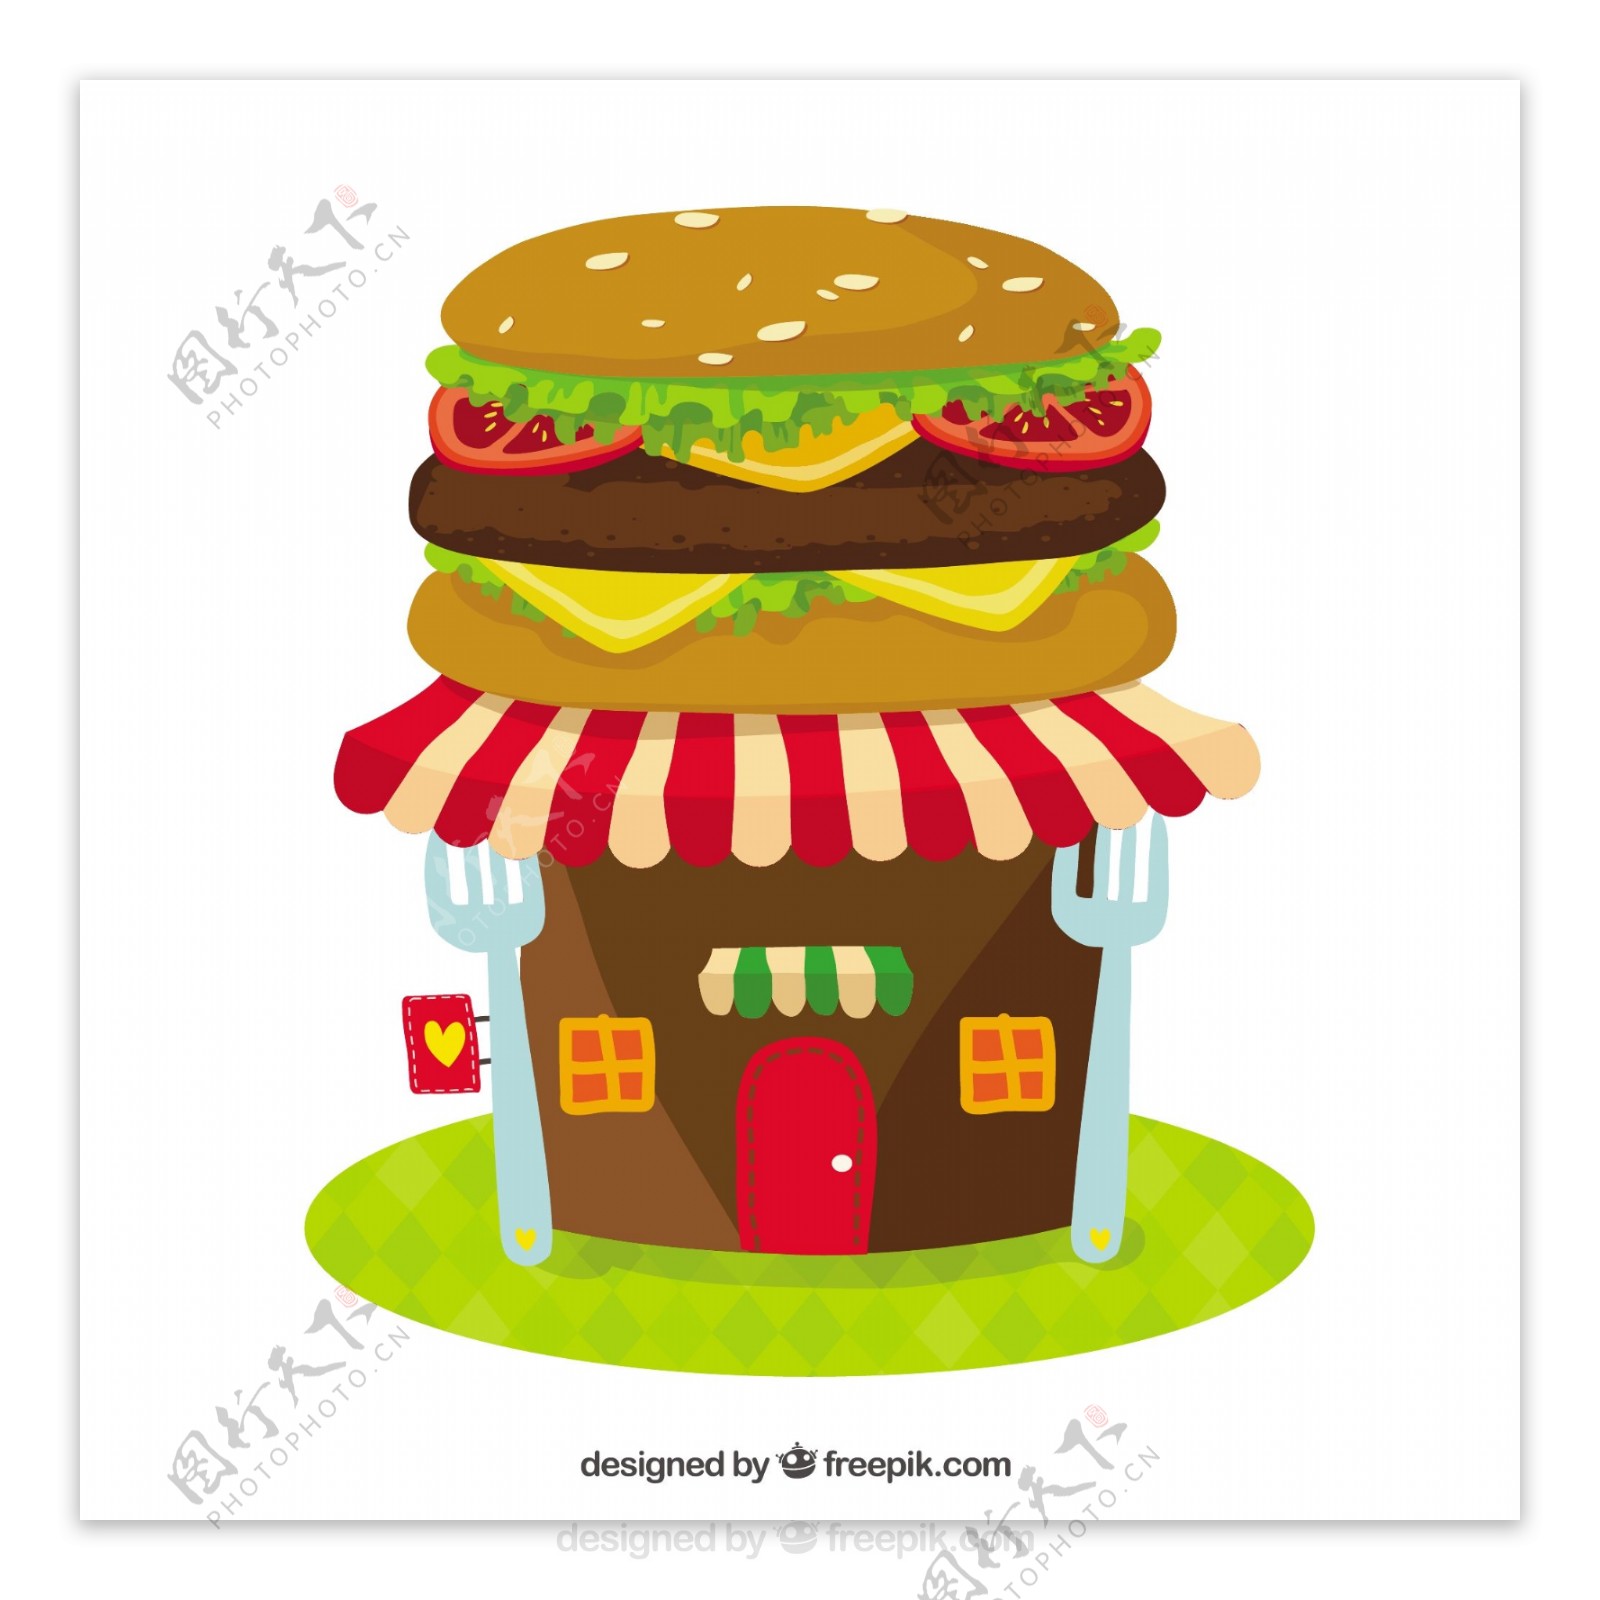 创意汉堡包房子卡通图形矢量素材